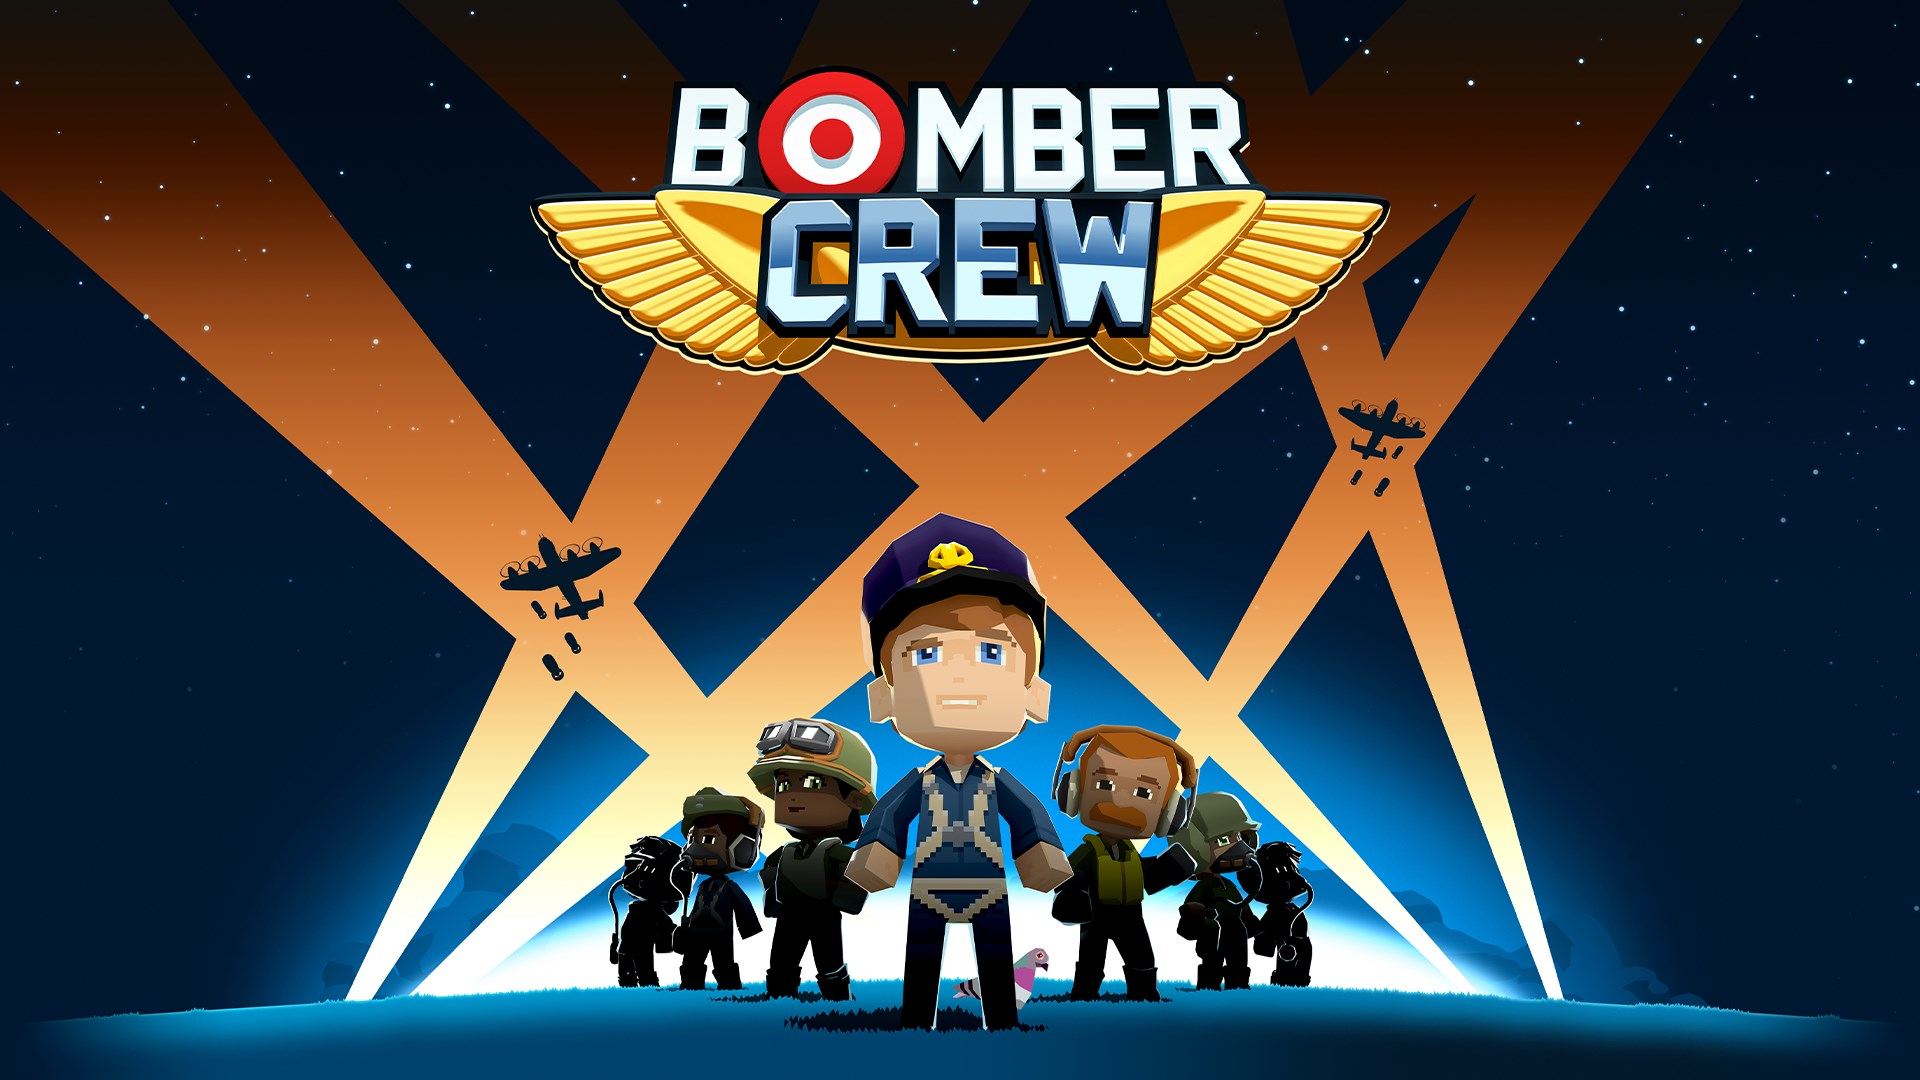 Bomber Crew ludum addere potes ad archivum tuum gratis et per vaporem perpetuum.